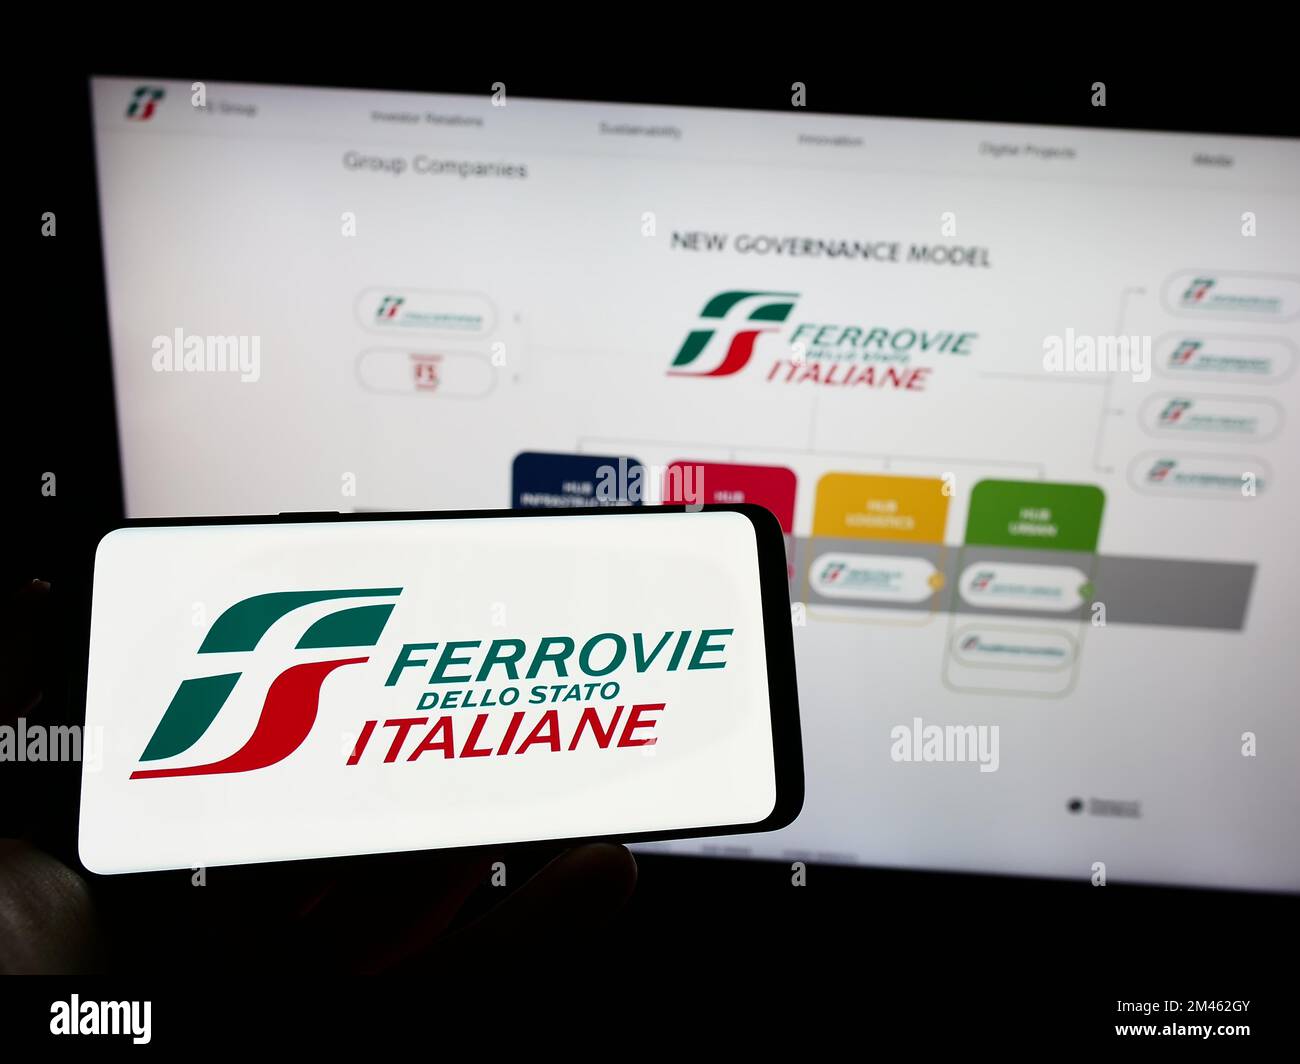 Personne tenant un téléphone portable avec le logo de la société Ferrovie dello Stato Italiane S.p.A. à l'écran en face de la page web. Mise au point sur l'affichage du téléphone. Banque D'Images